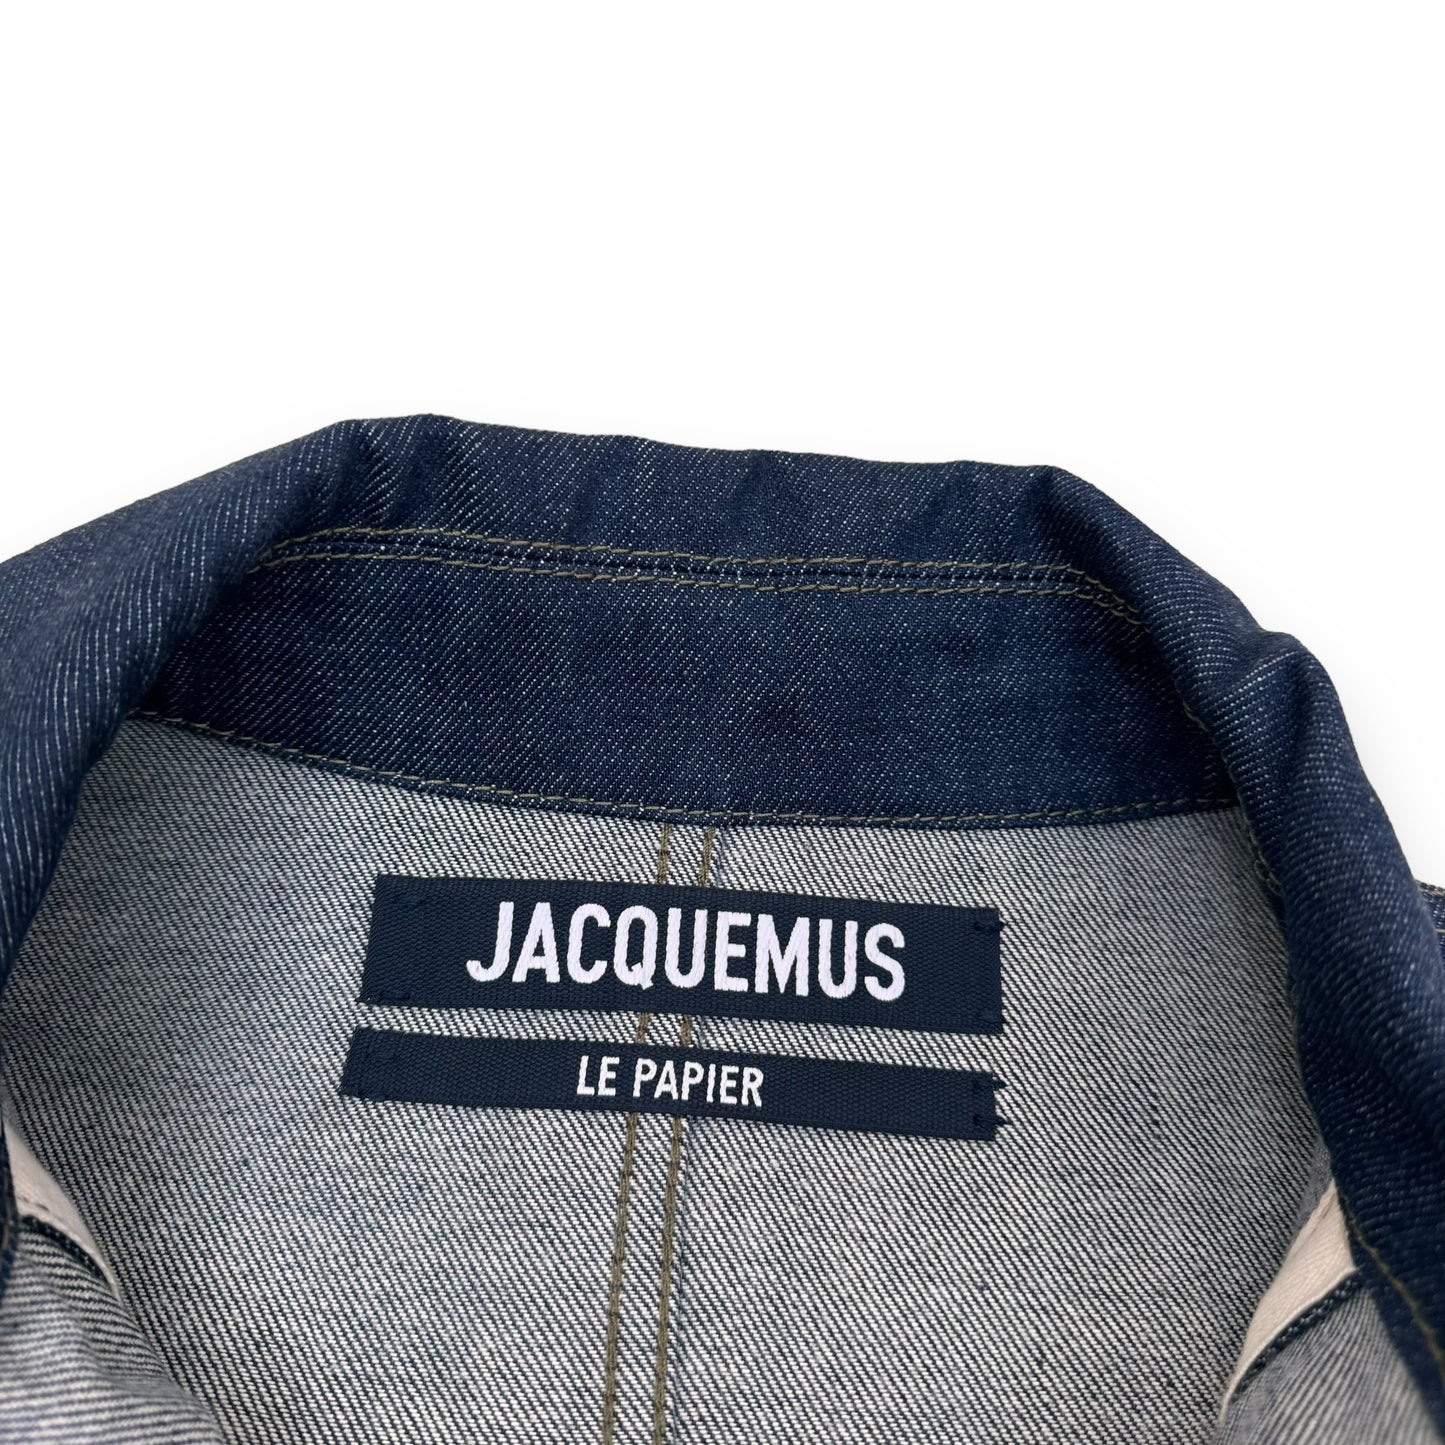 JACQUEMUS ‘LE PAPIER’ DENIM JACKET NAVY XL